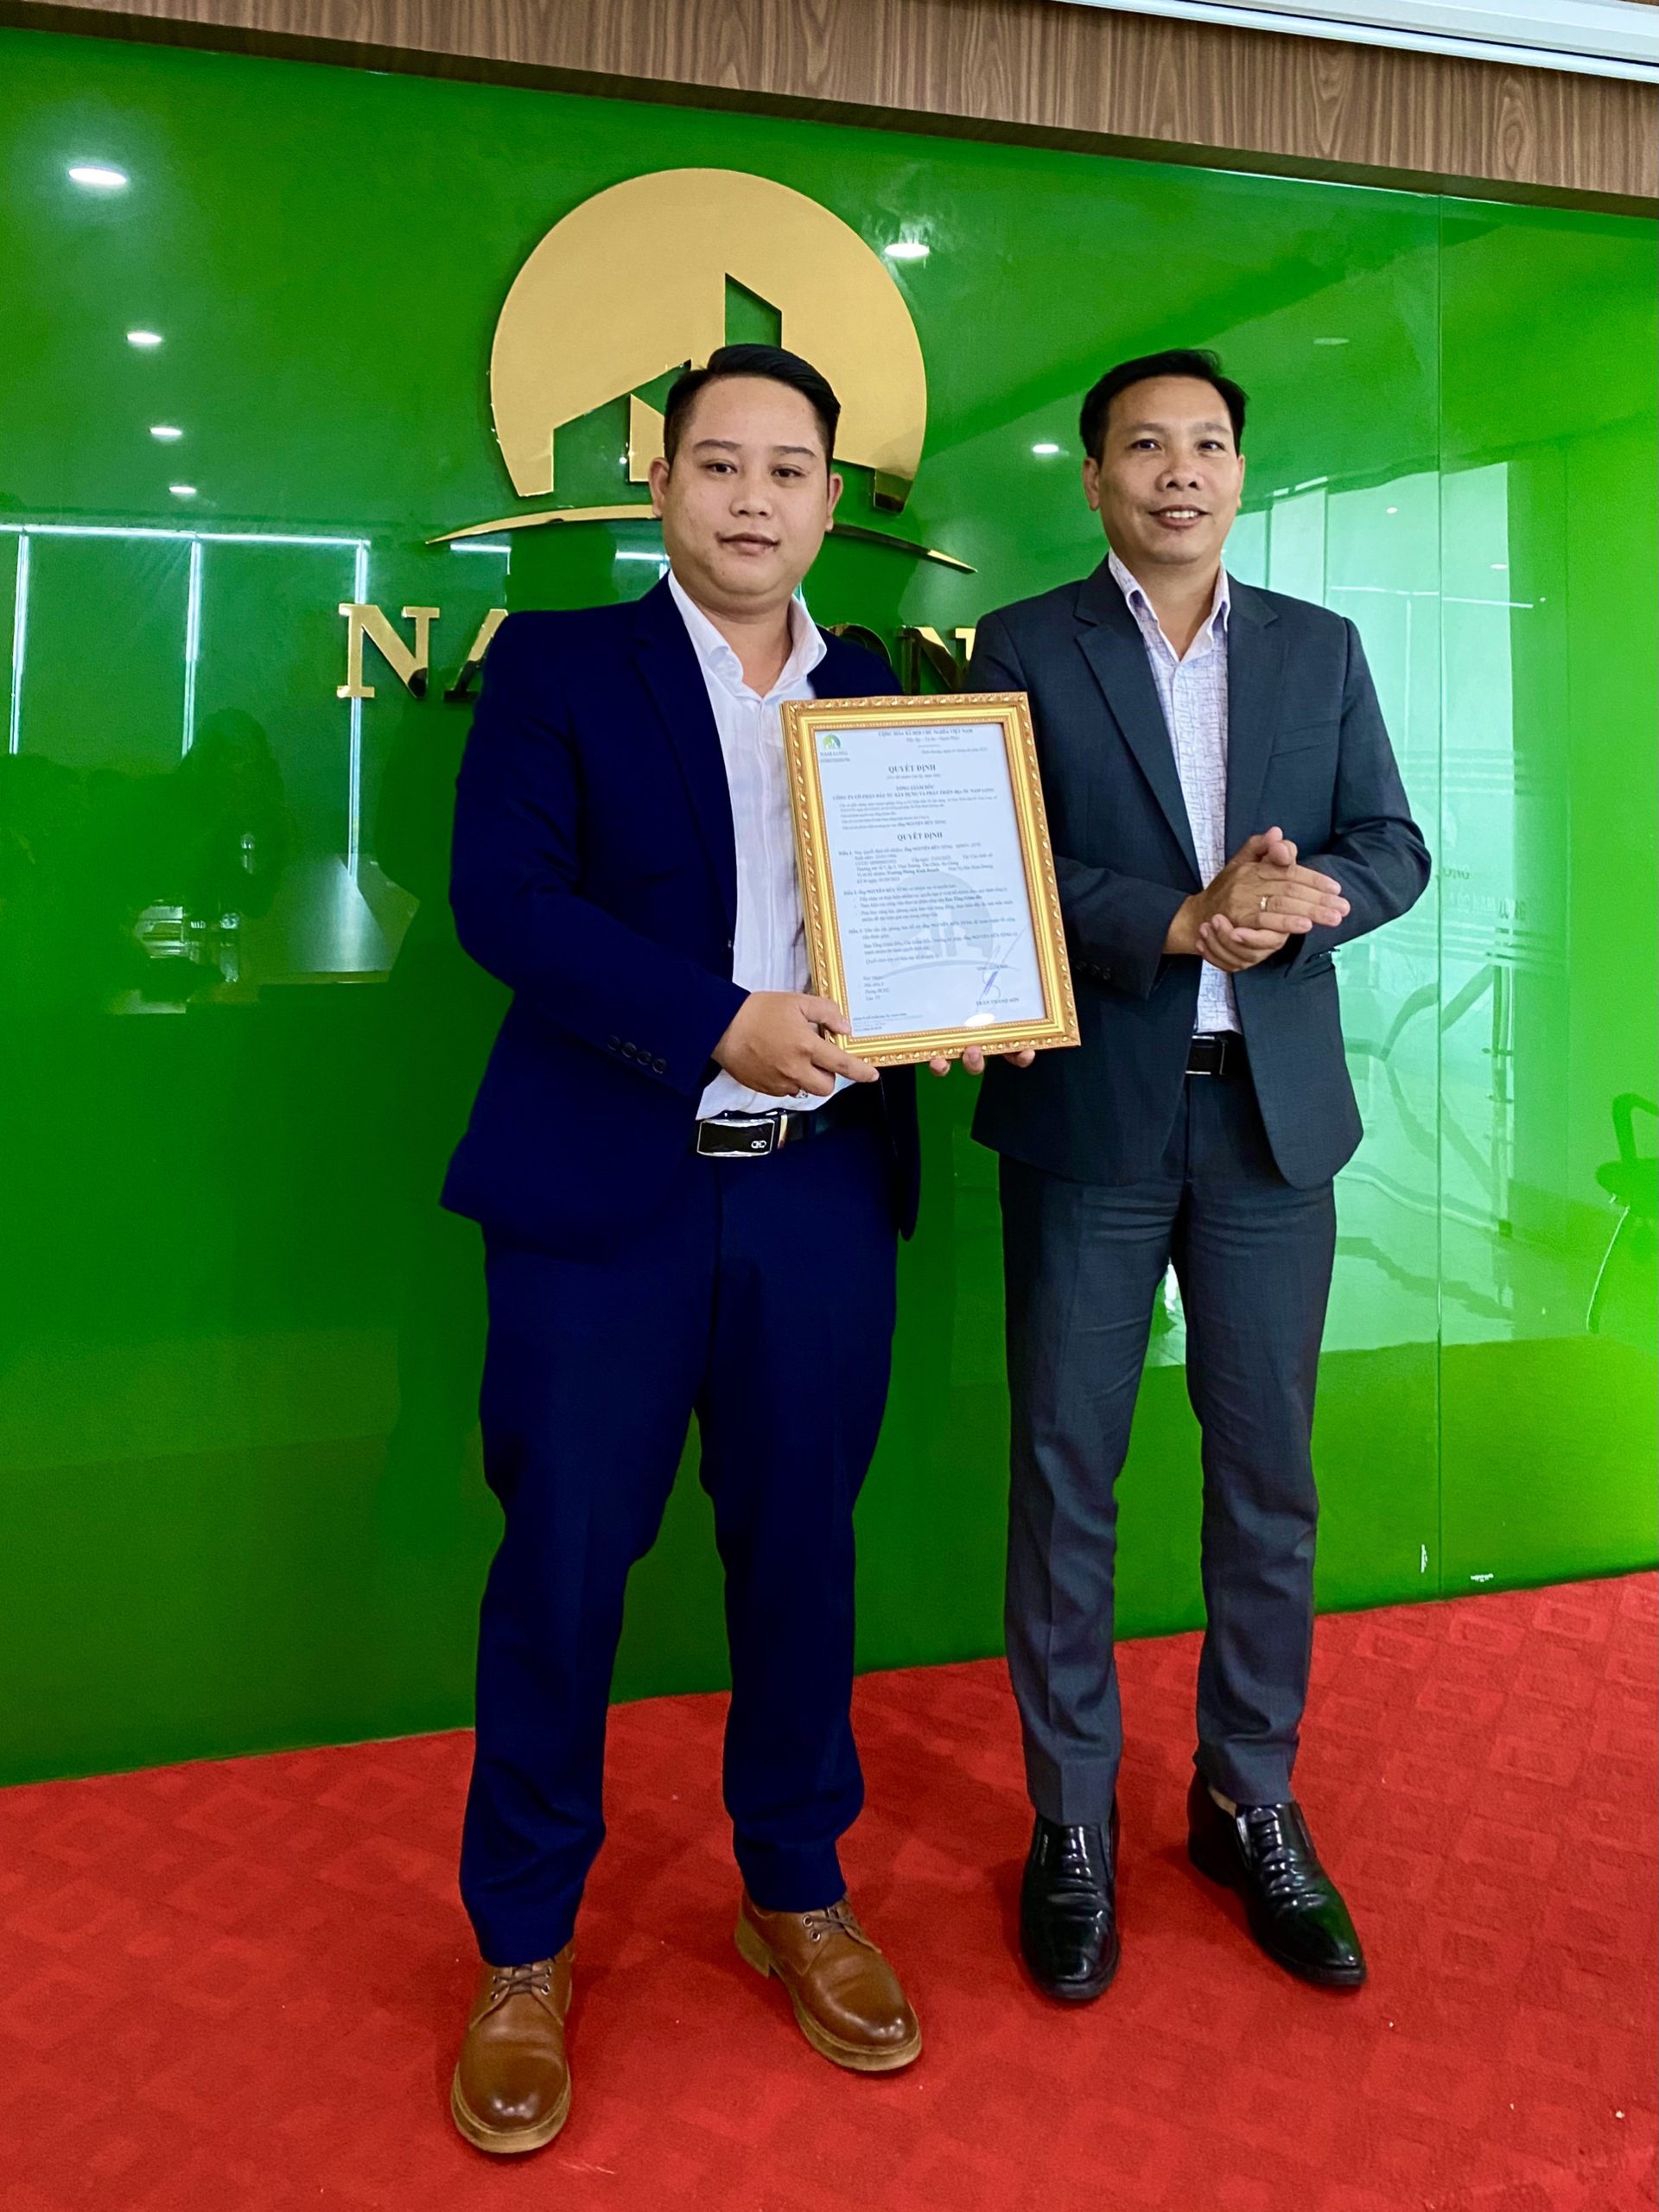 Ông Nguyễn Hữu Tùng - Quyền trưởng phòng kinh doanh Sàn Bình Dương được Tổng giám đốc Trần Thanh Sơn trao quyết định bổ nhiệm Trưởng Phòng Kinh Doanh